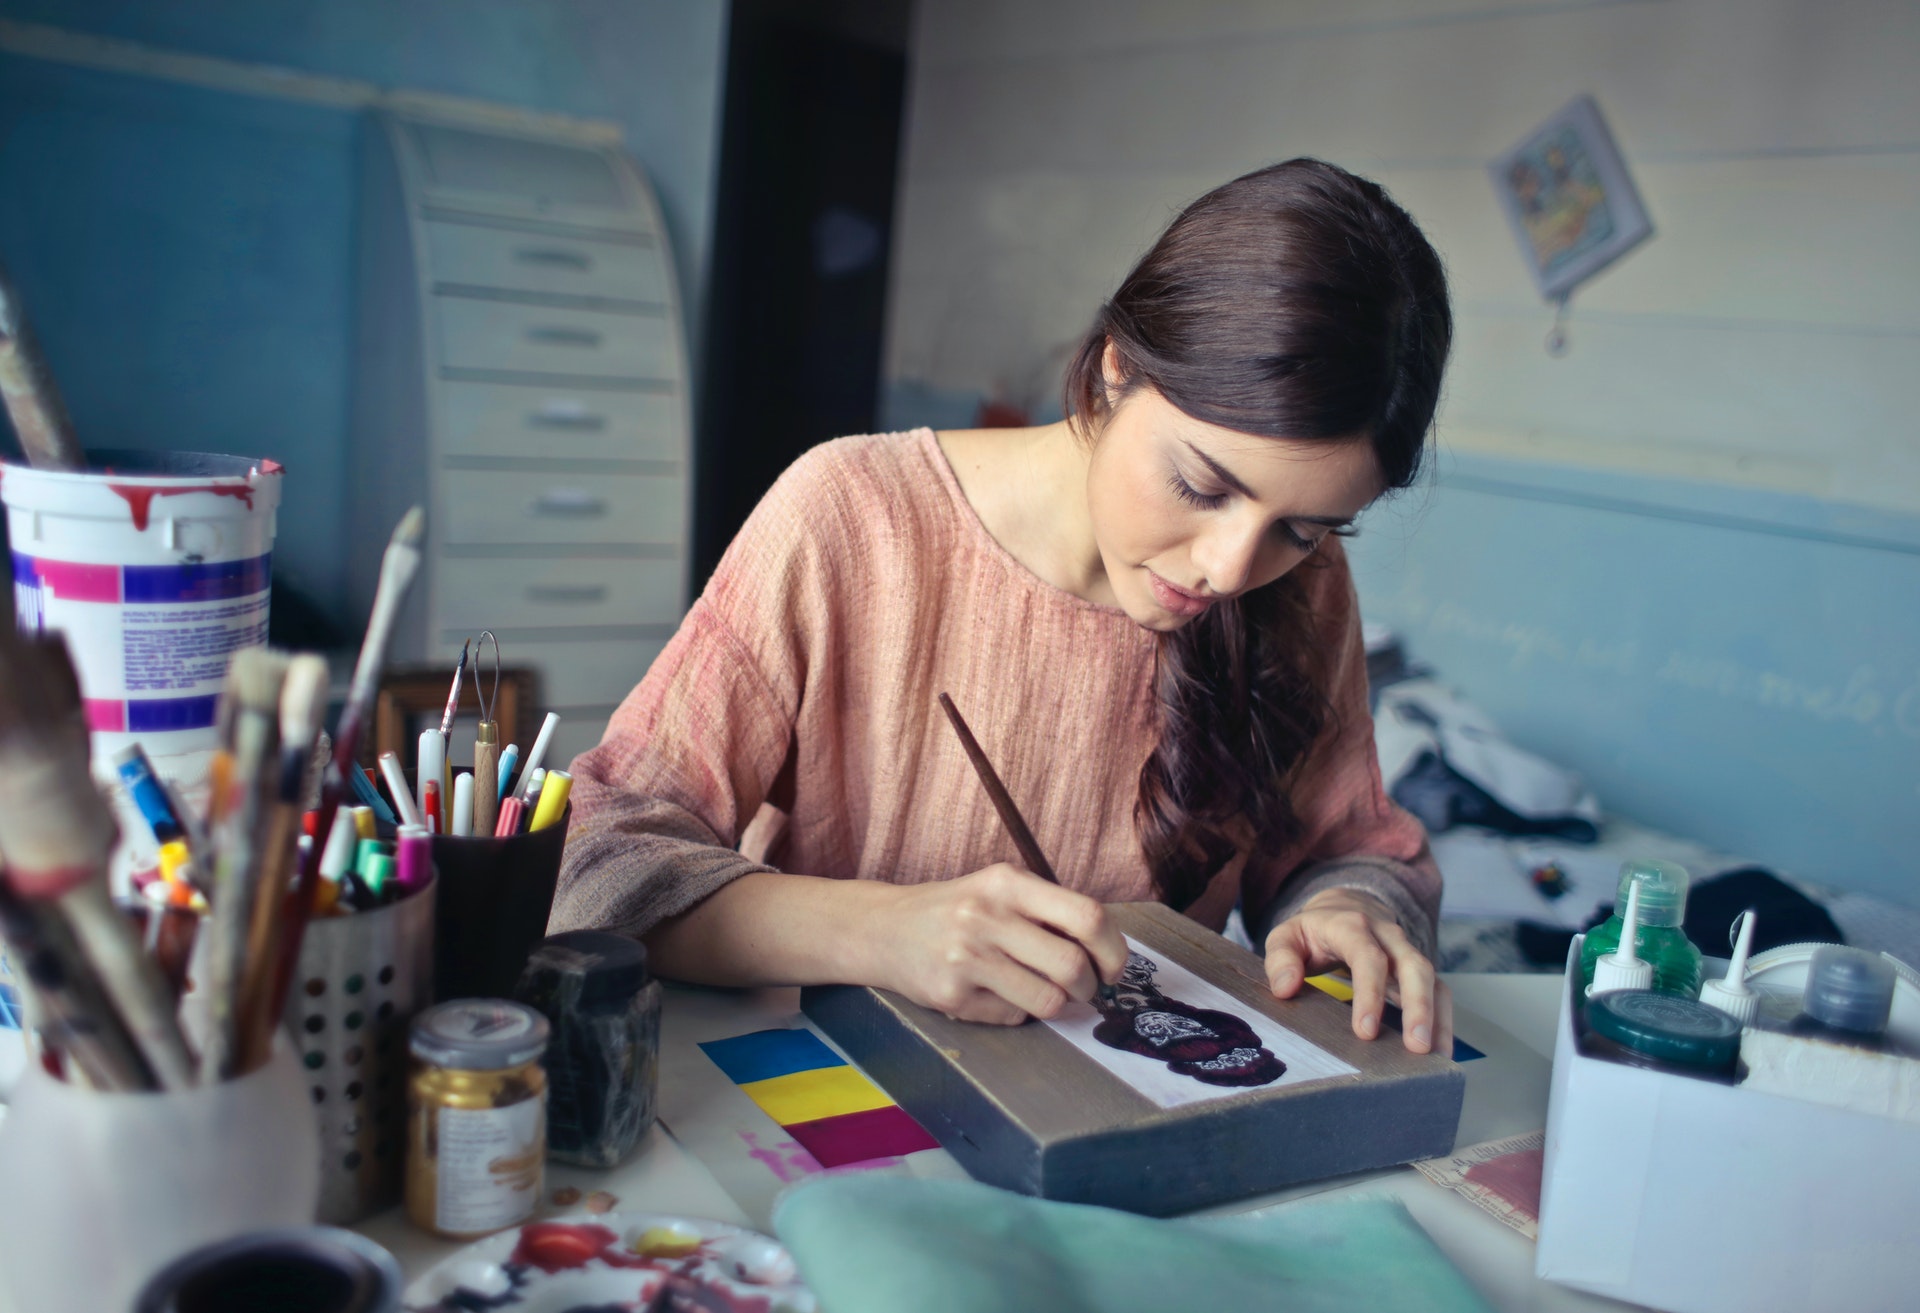 Mulher pintando algo em uma caixa. Imagem ilustrativa do texto como abrir meu próprio negócio.